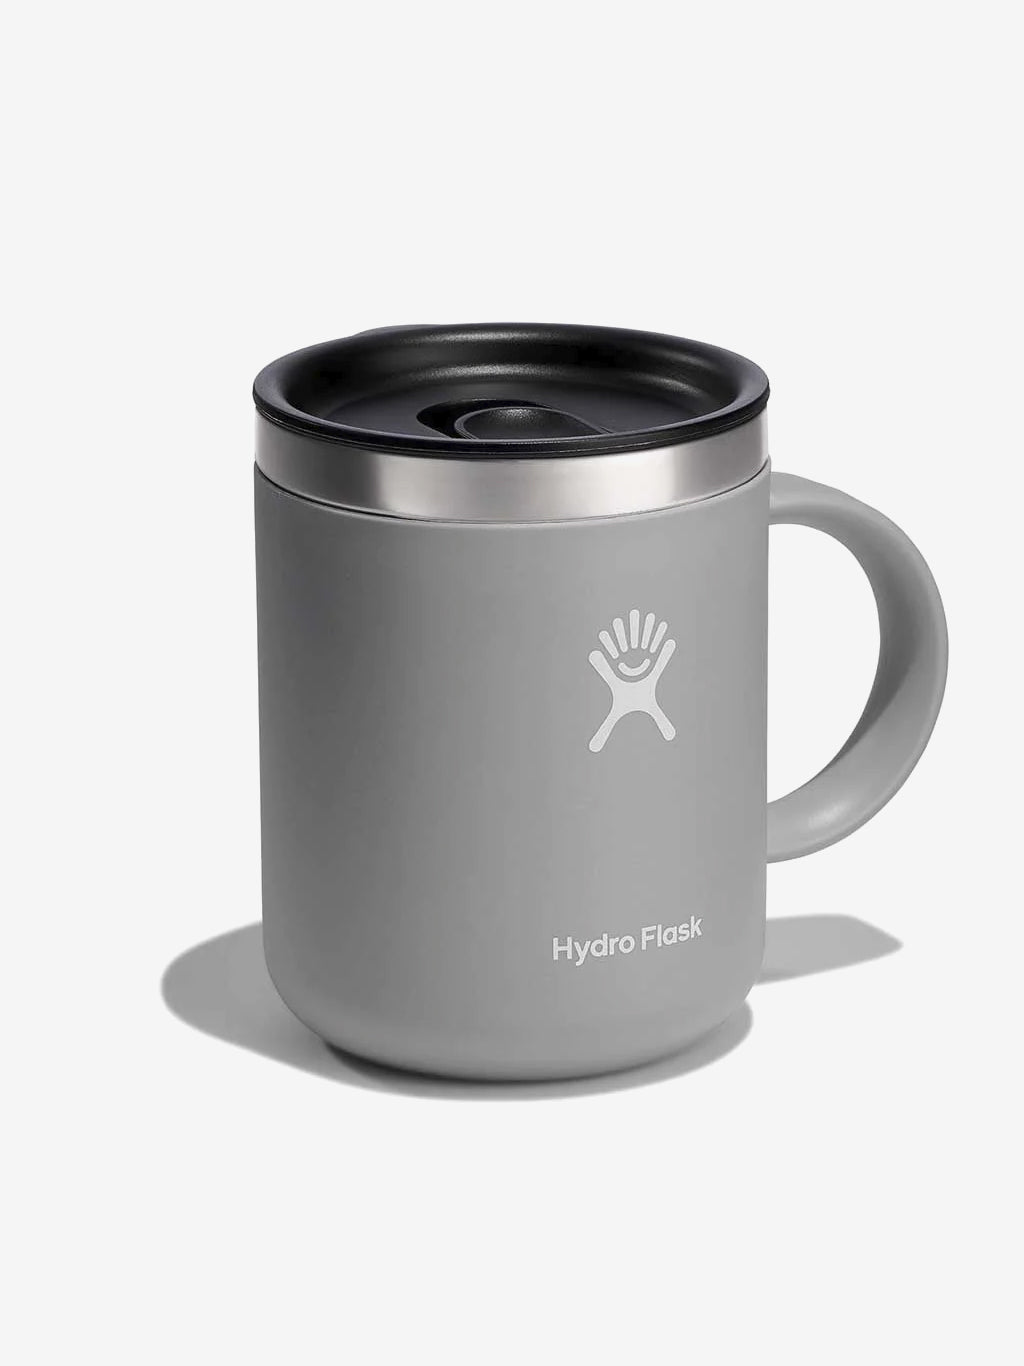 https://www.yogamatters.com/cdn/shop/products/Hydro-Flask-355ml-_12oz_-Insulated-Coffee-Mug-Birch-2.jpg?v=1694160028